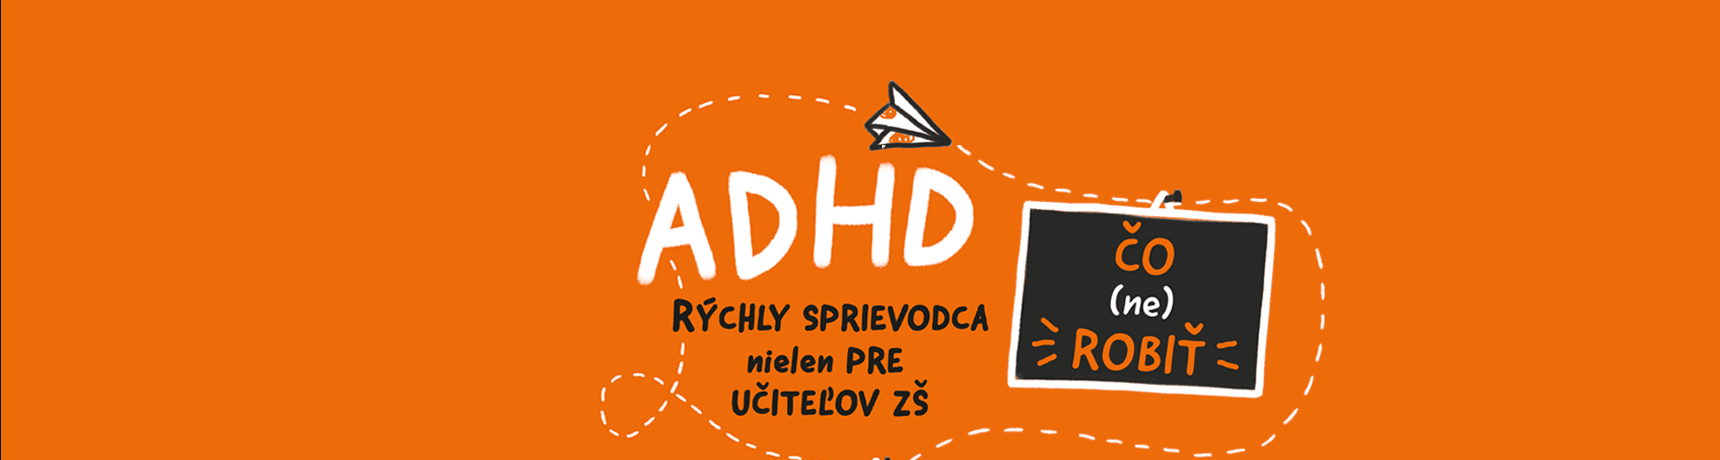 ADHD sprievodca